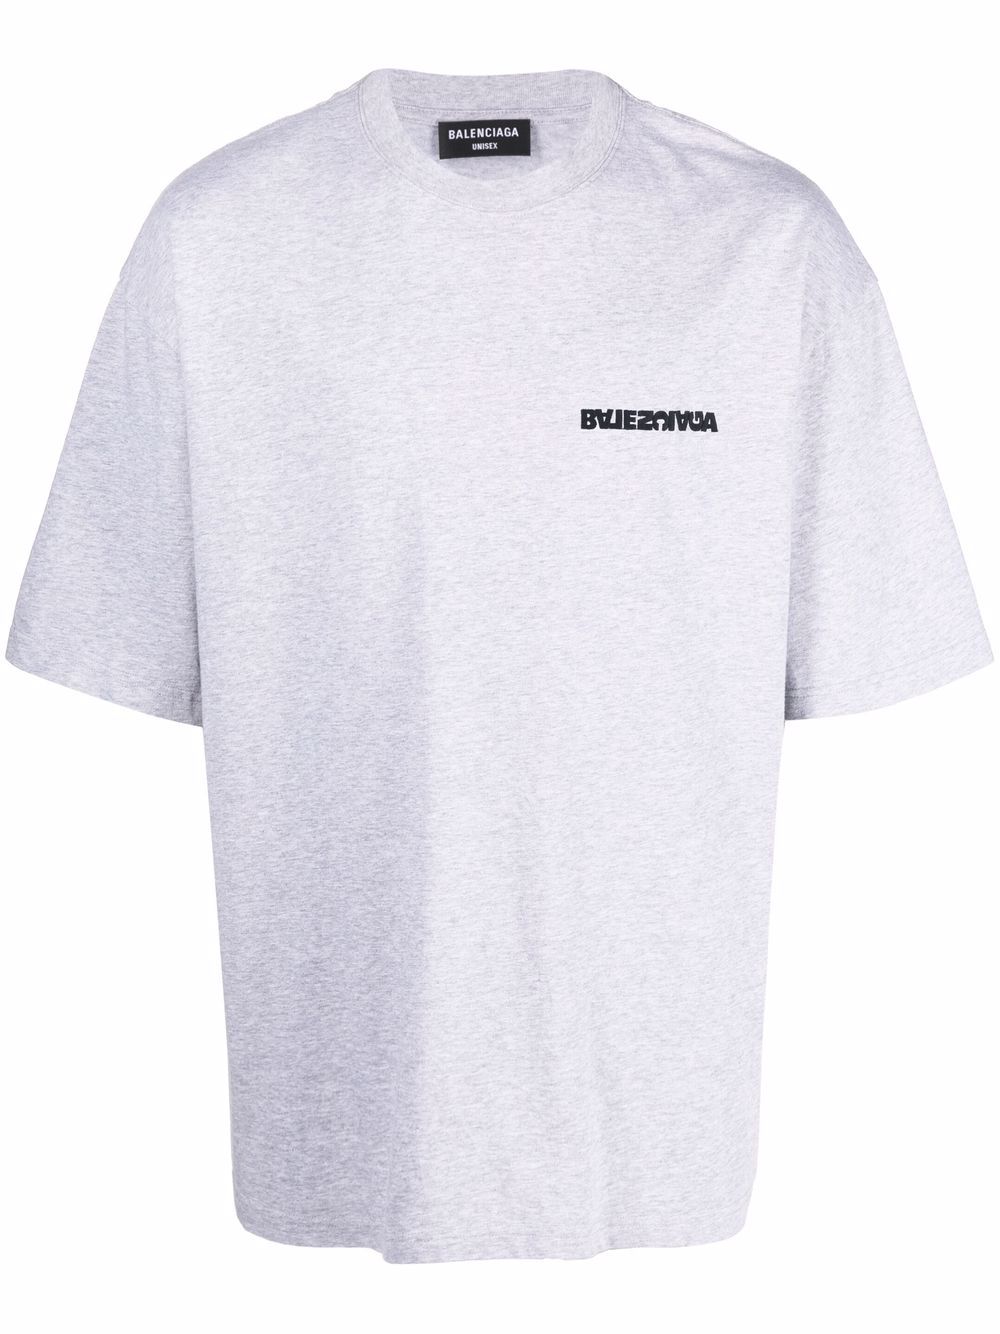 BALENCIAGA T-shirt grigia in cotone con stampa logo Balenciaga